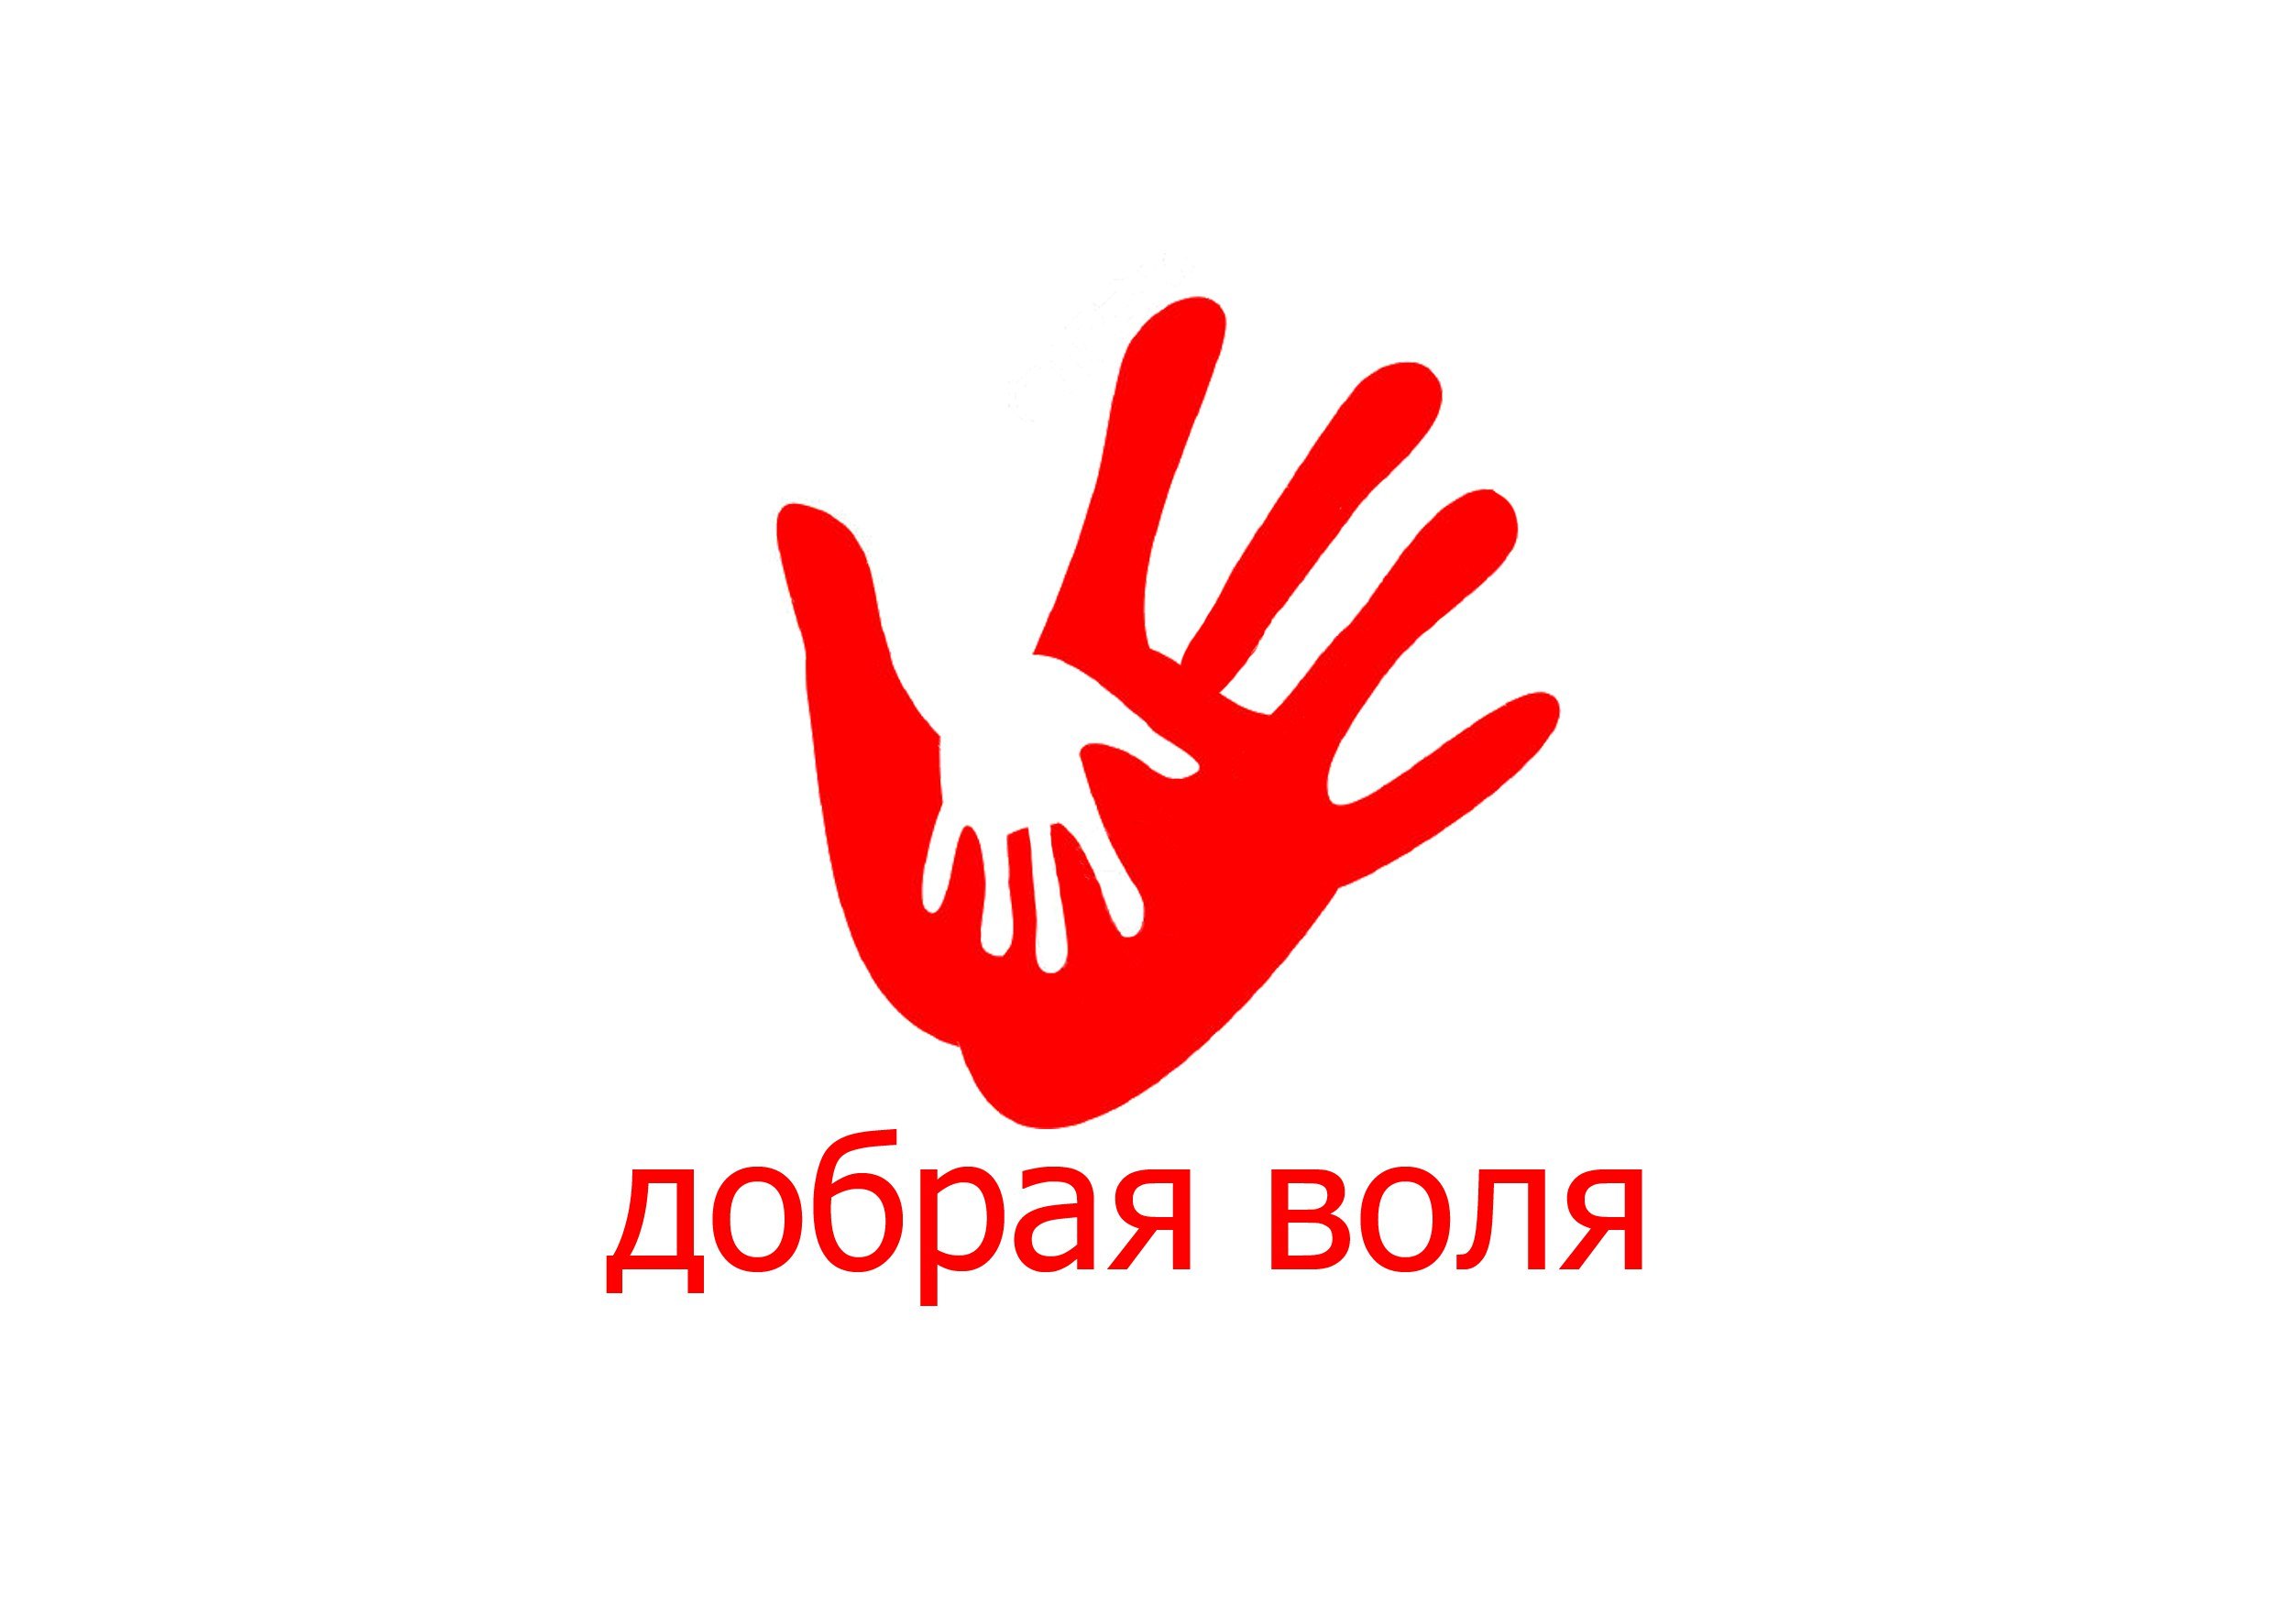 Иностранные волонтеры. Символ волонтеров. Символ волонтеров России. Эмблема добровольцев. Логотип волонтерского движения.